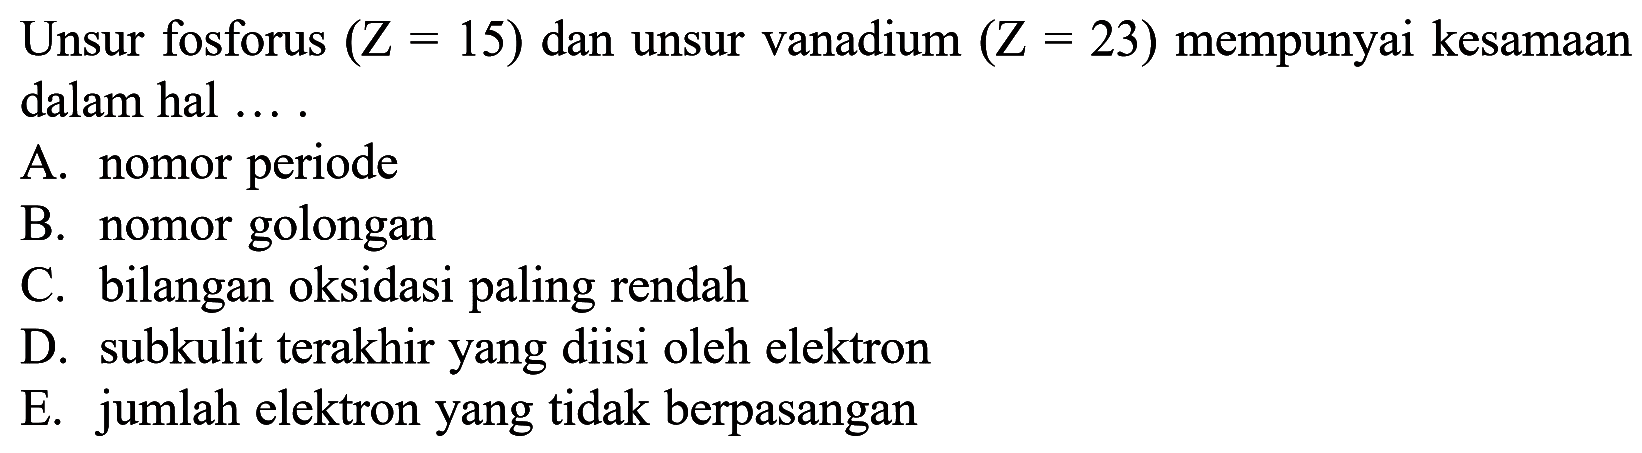 Unsur fosforus (Z = 15) dan unsur vanadium (Z = 23) mempunyai kesamaan dalam hal ....